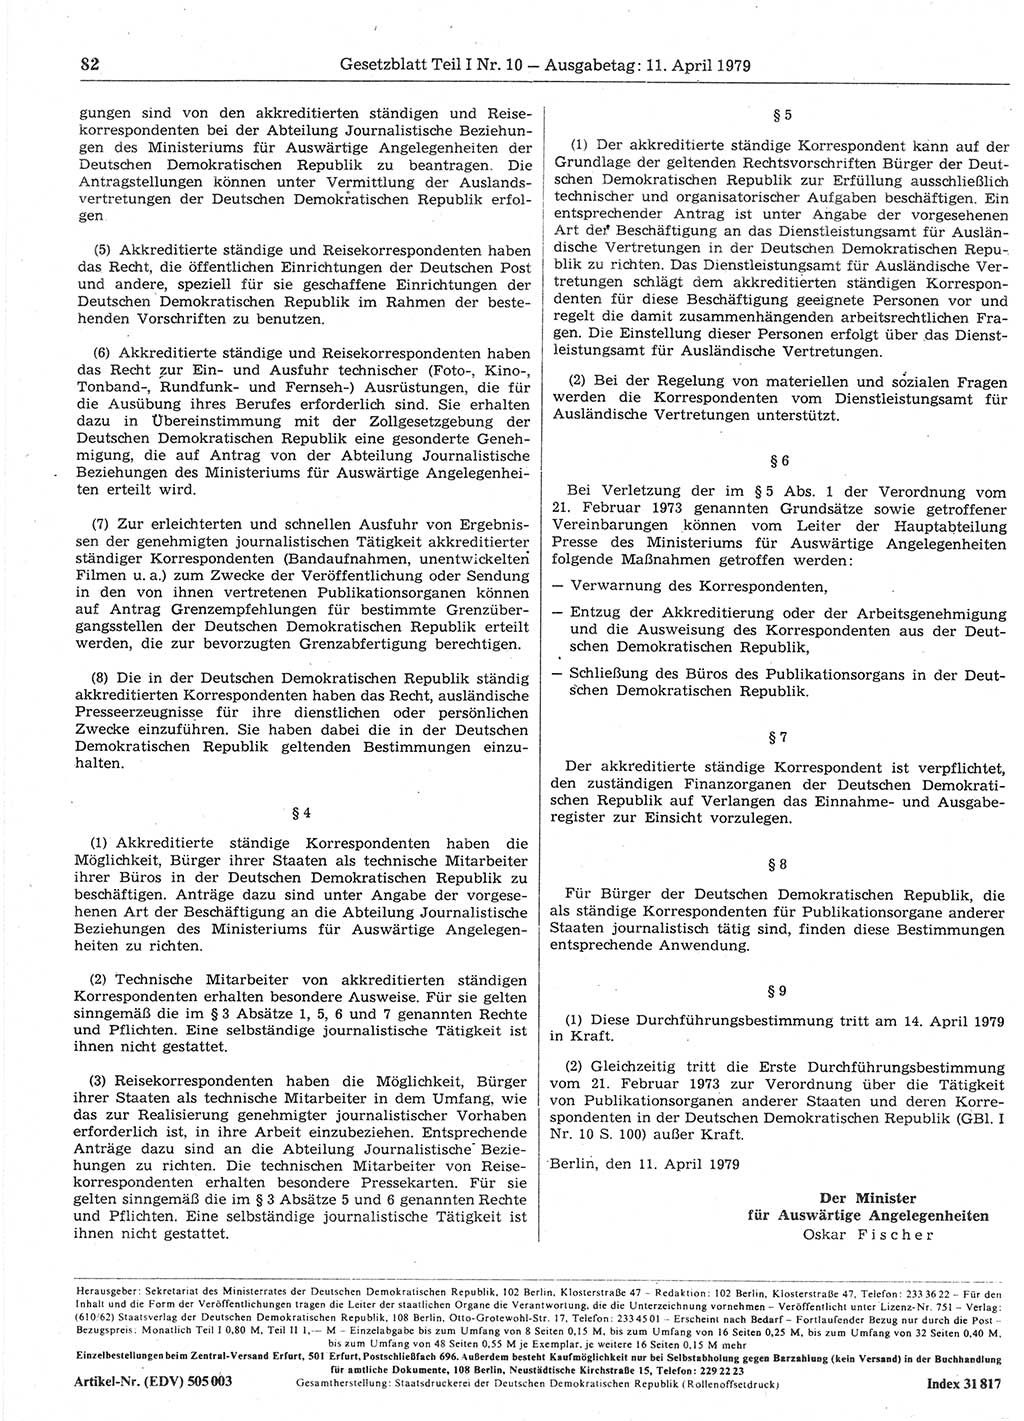 Gesetzblatt (GBl.) der Deutschen Demokratischen Republik (DDR) Teil Ⅰ 1979, Seite 82 (GBl. DDR Ⅰ 1979, S. 82)